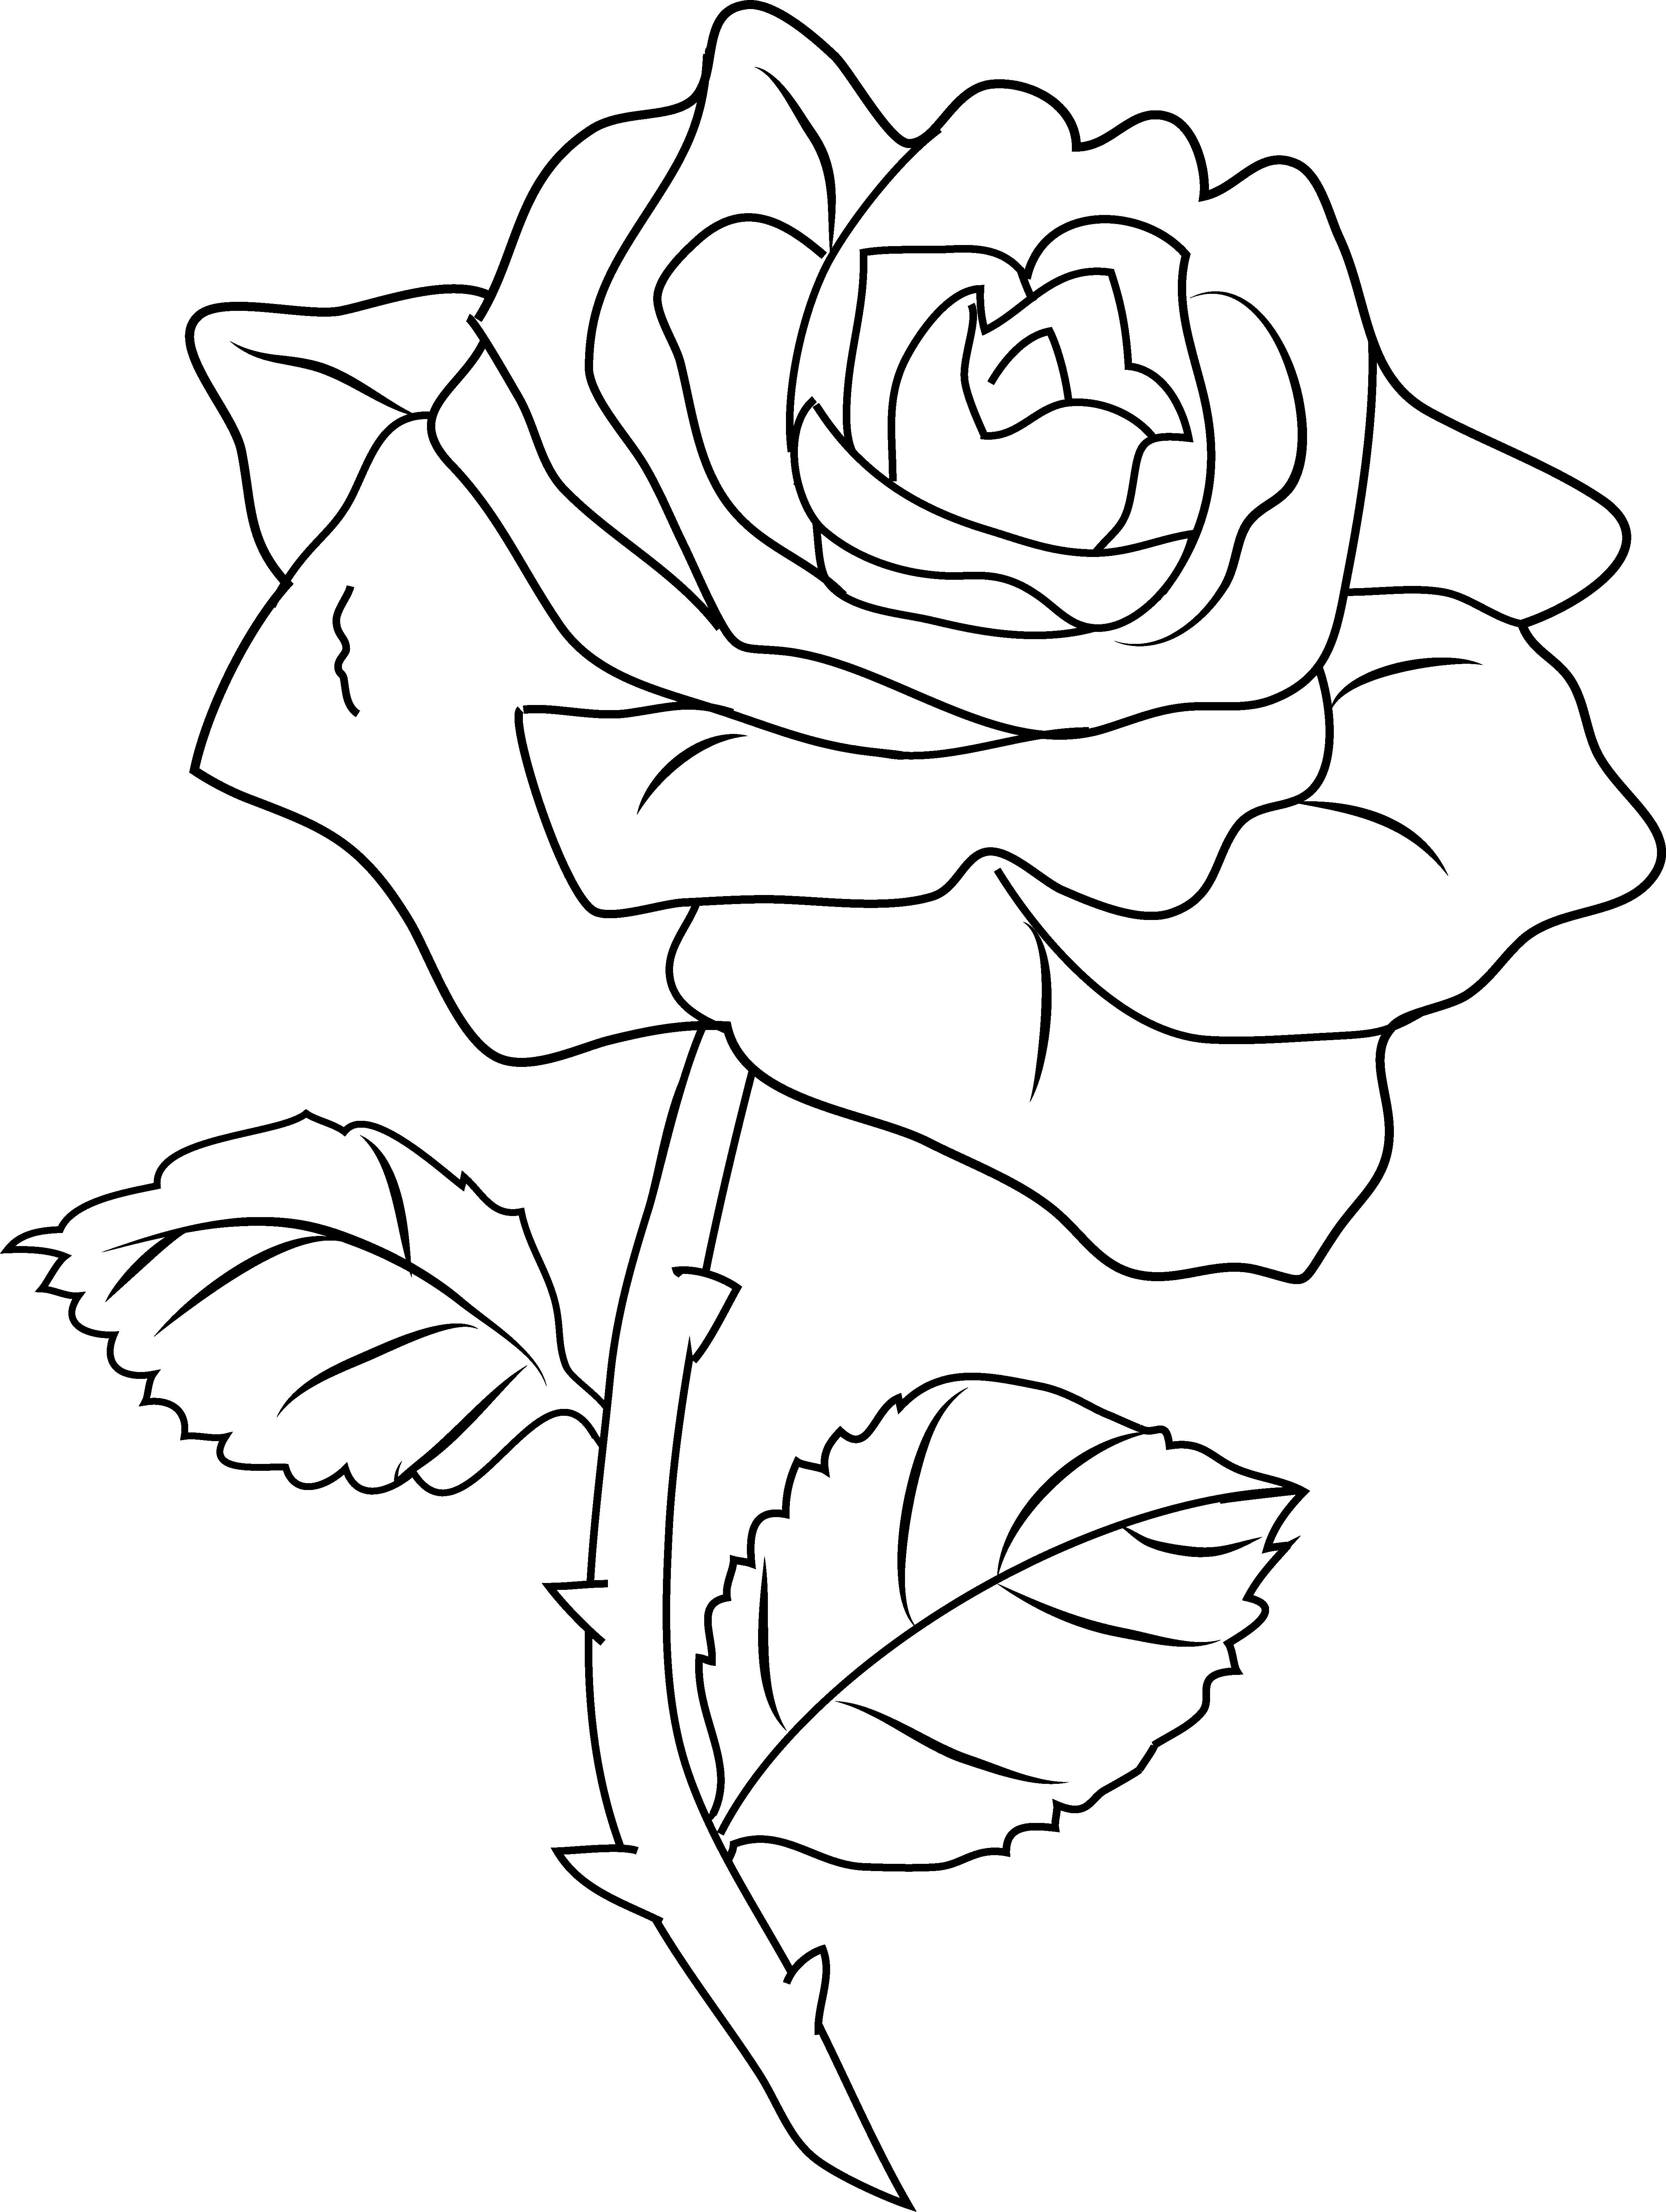 Картинки пнг раскраски. Роза раскраска. Роза раскраска для детей. Раскраска роза цветок. Роза для рисования.